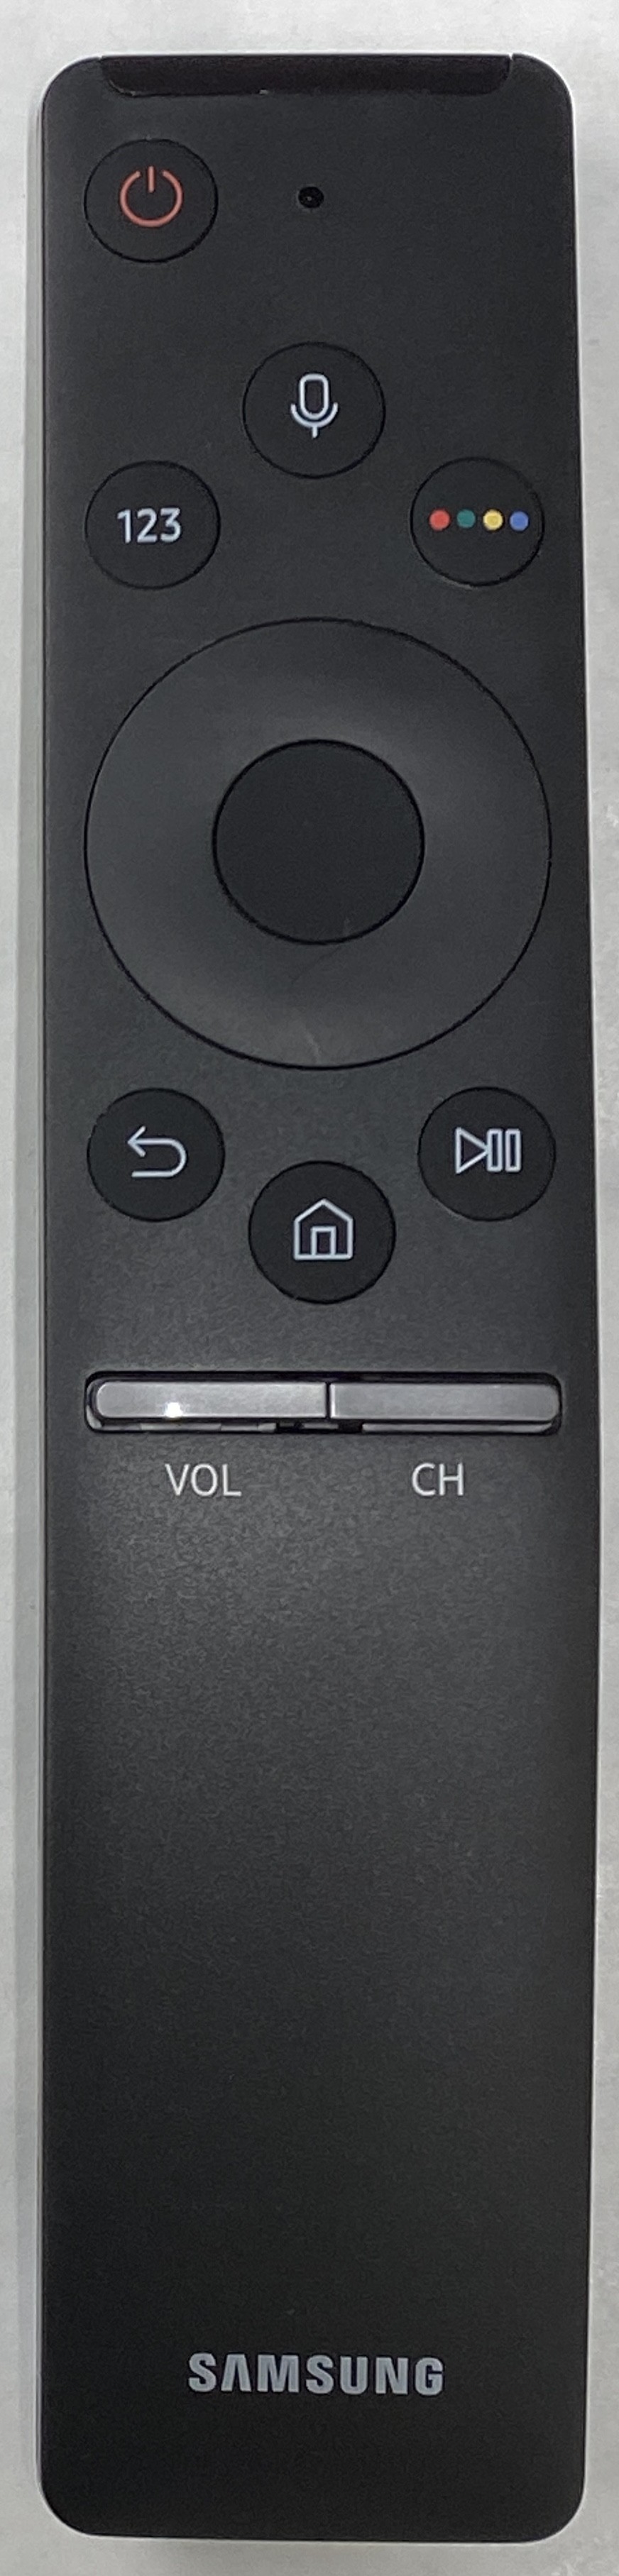 SAMSUNG UE55KS8000 Smart Remote Control Original